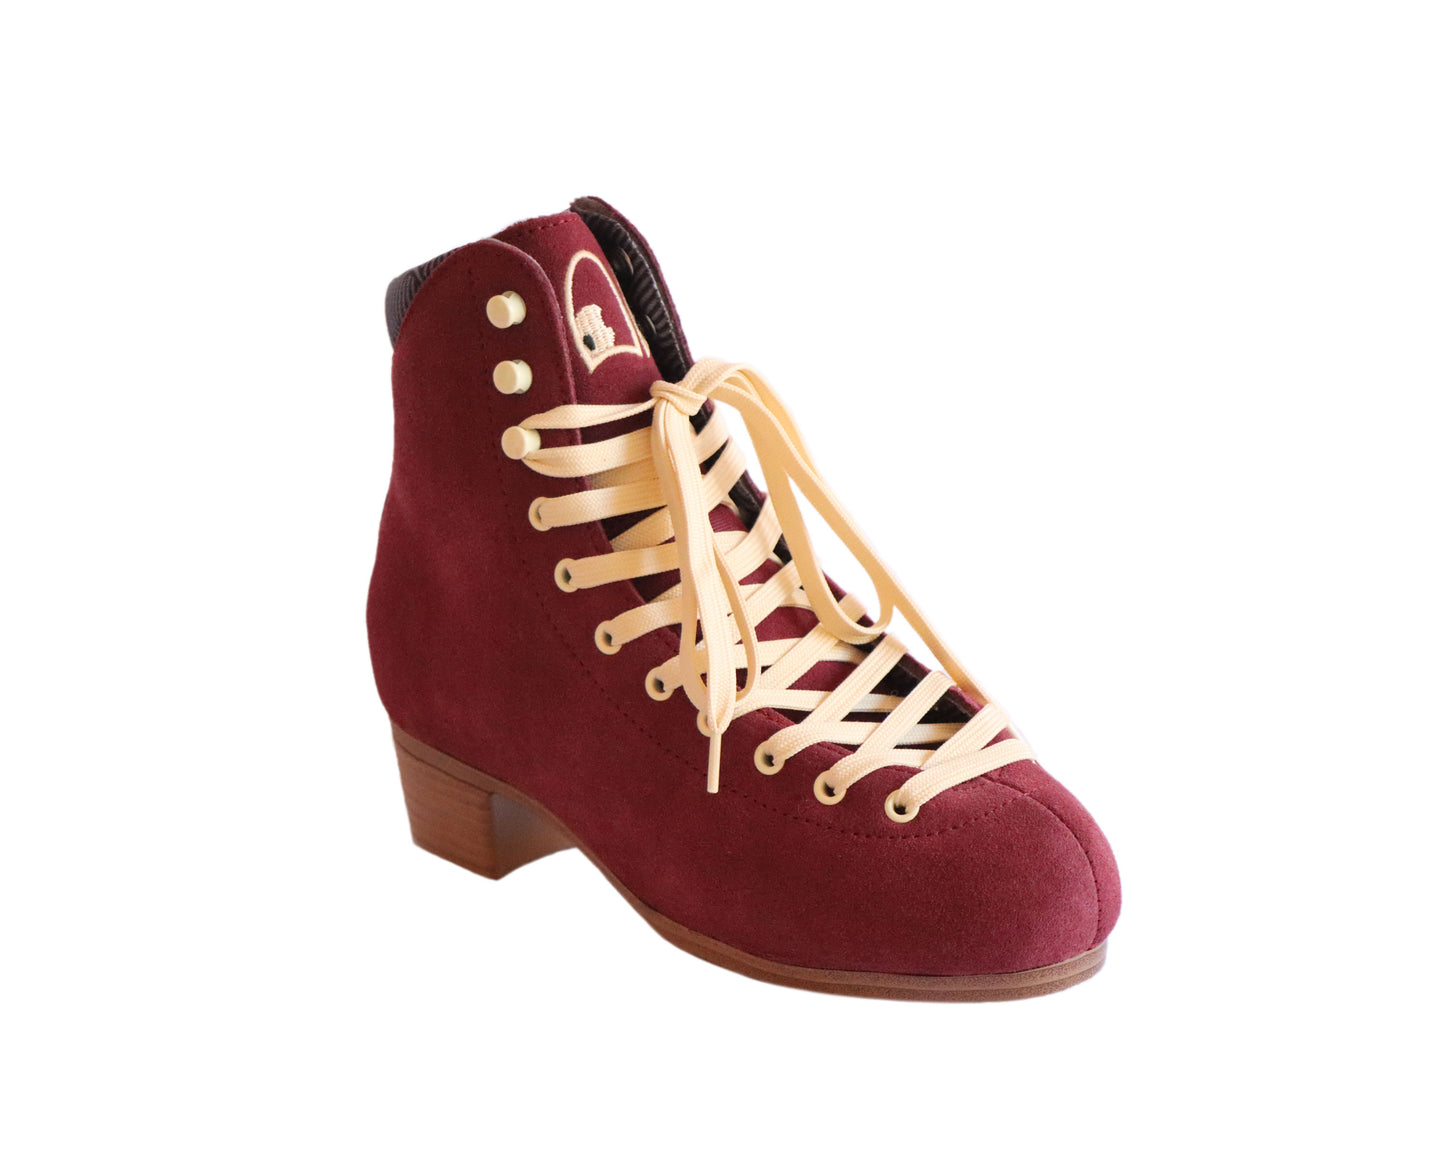 Chuffed Skates burgundy roller skates boot only